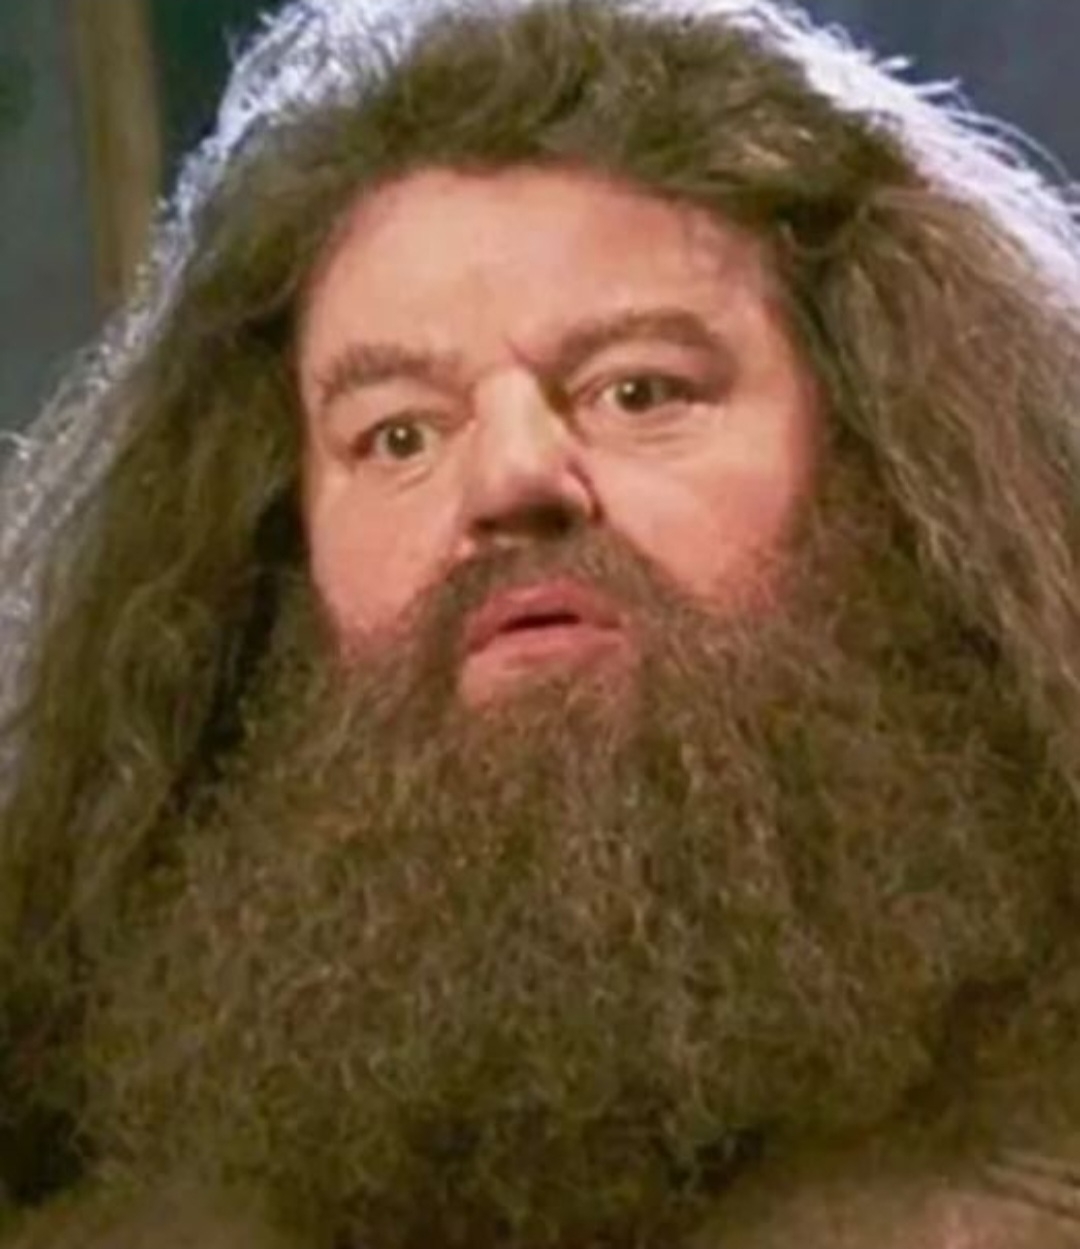 Robbie Coltrane - Seu grande sucesso, inclusive atraindo o carinho das crianças , foi o gigante Rubéo Hagrid, o guardião de Hogwarts. Ele morreu em 14/10/22 aos 72 anos.  